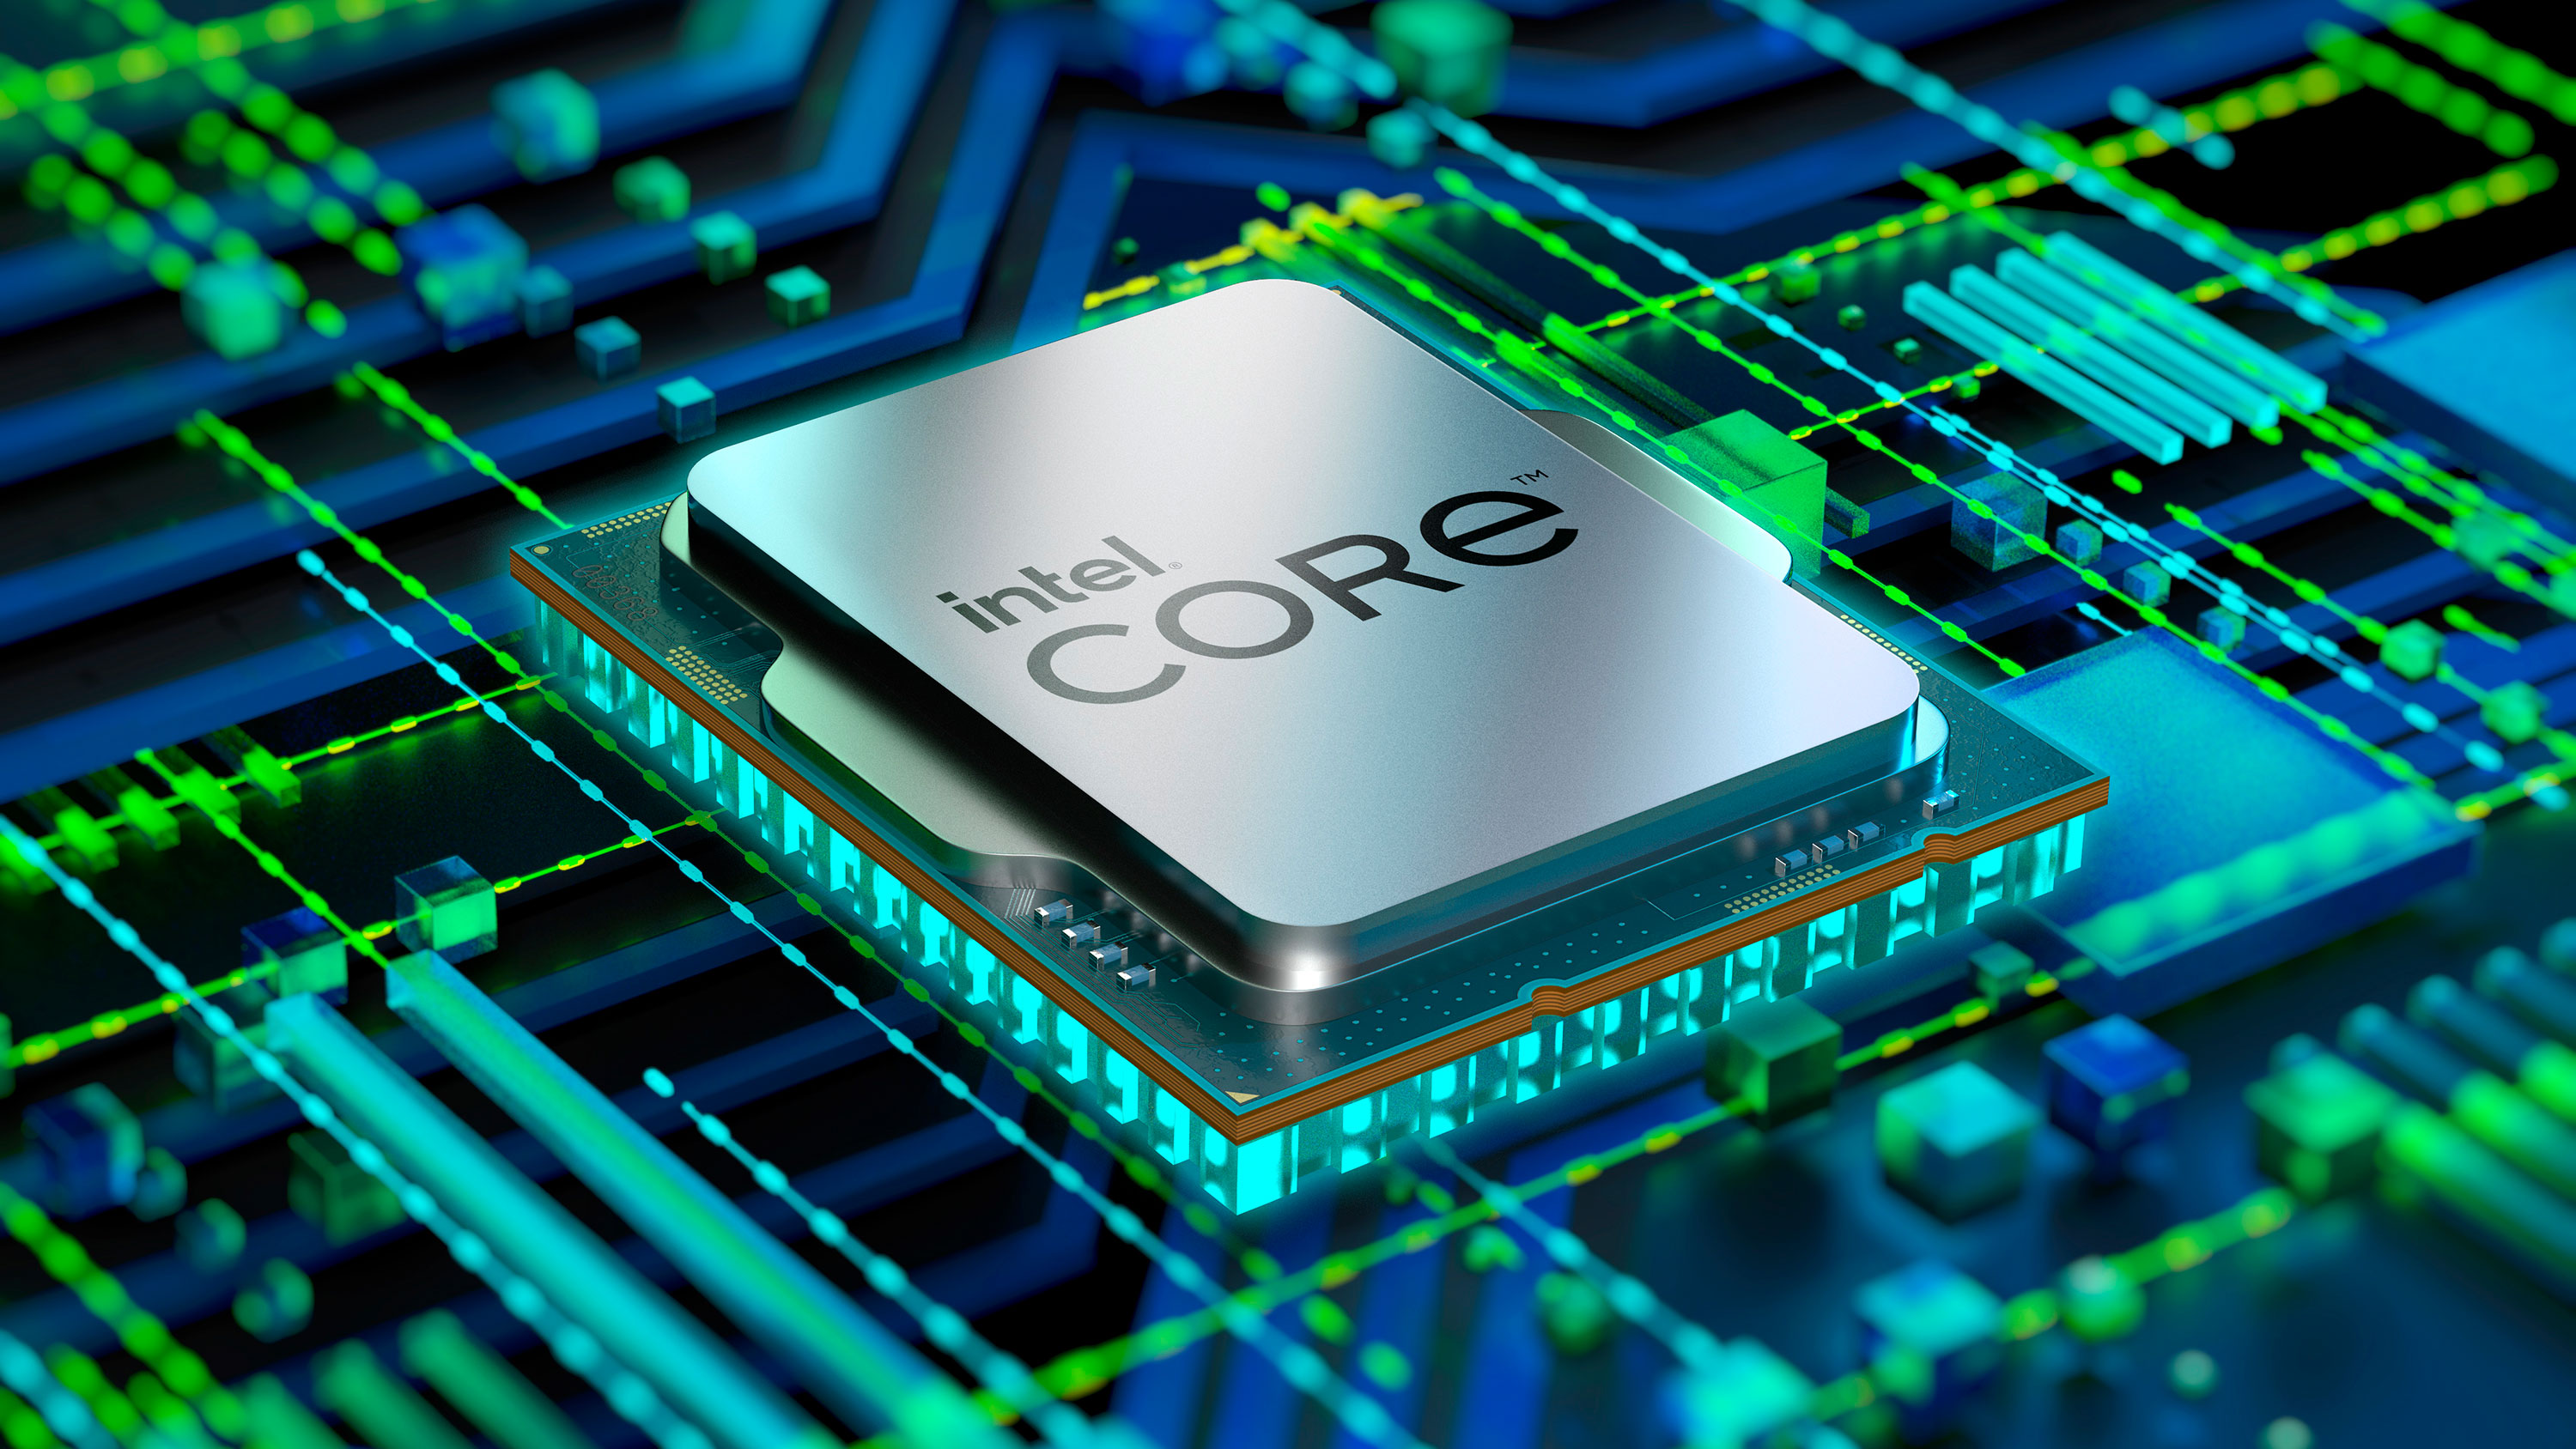 Procesor Intel Core i5-12500 je speciálně určený pro základní desky s paticí LGA1700 z řady Intel 600 Series, kdy se pyšní 6 jádry s maximálním taktem až 4,6 GHz diky TB 2.0 technologii.